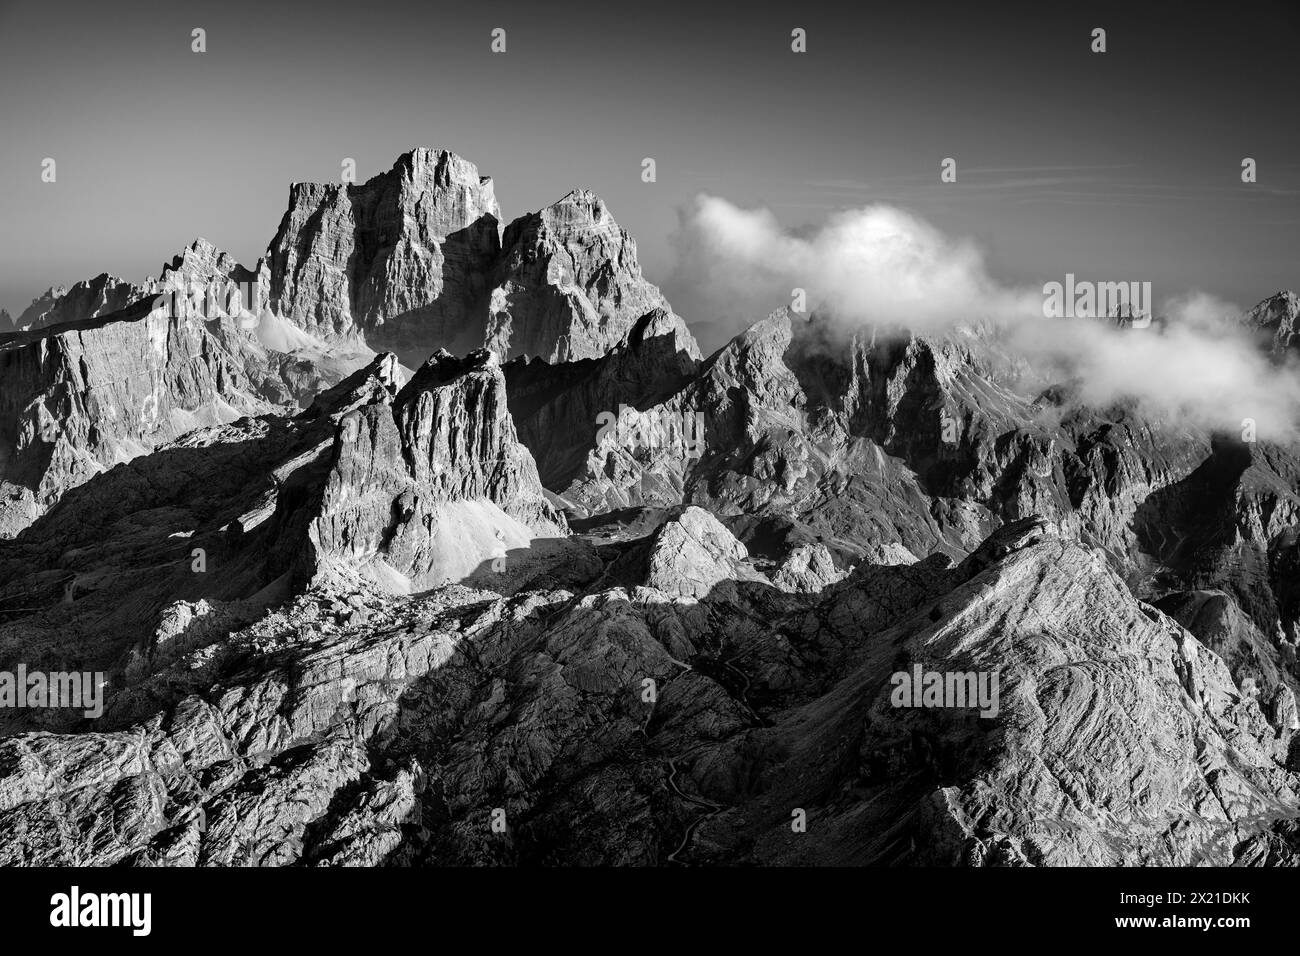 Bergkulissen von Pelmo, Nuvolau und Averau, von Lagazuoi, Fanes-Sennes Naturpark, Dolomiten, UNESCO-Weltkulturerbe Dolomiten, Venetien, Italien Stockfoto